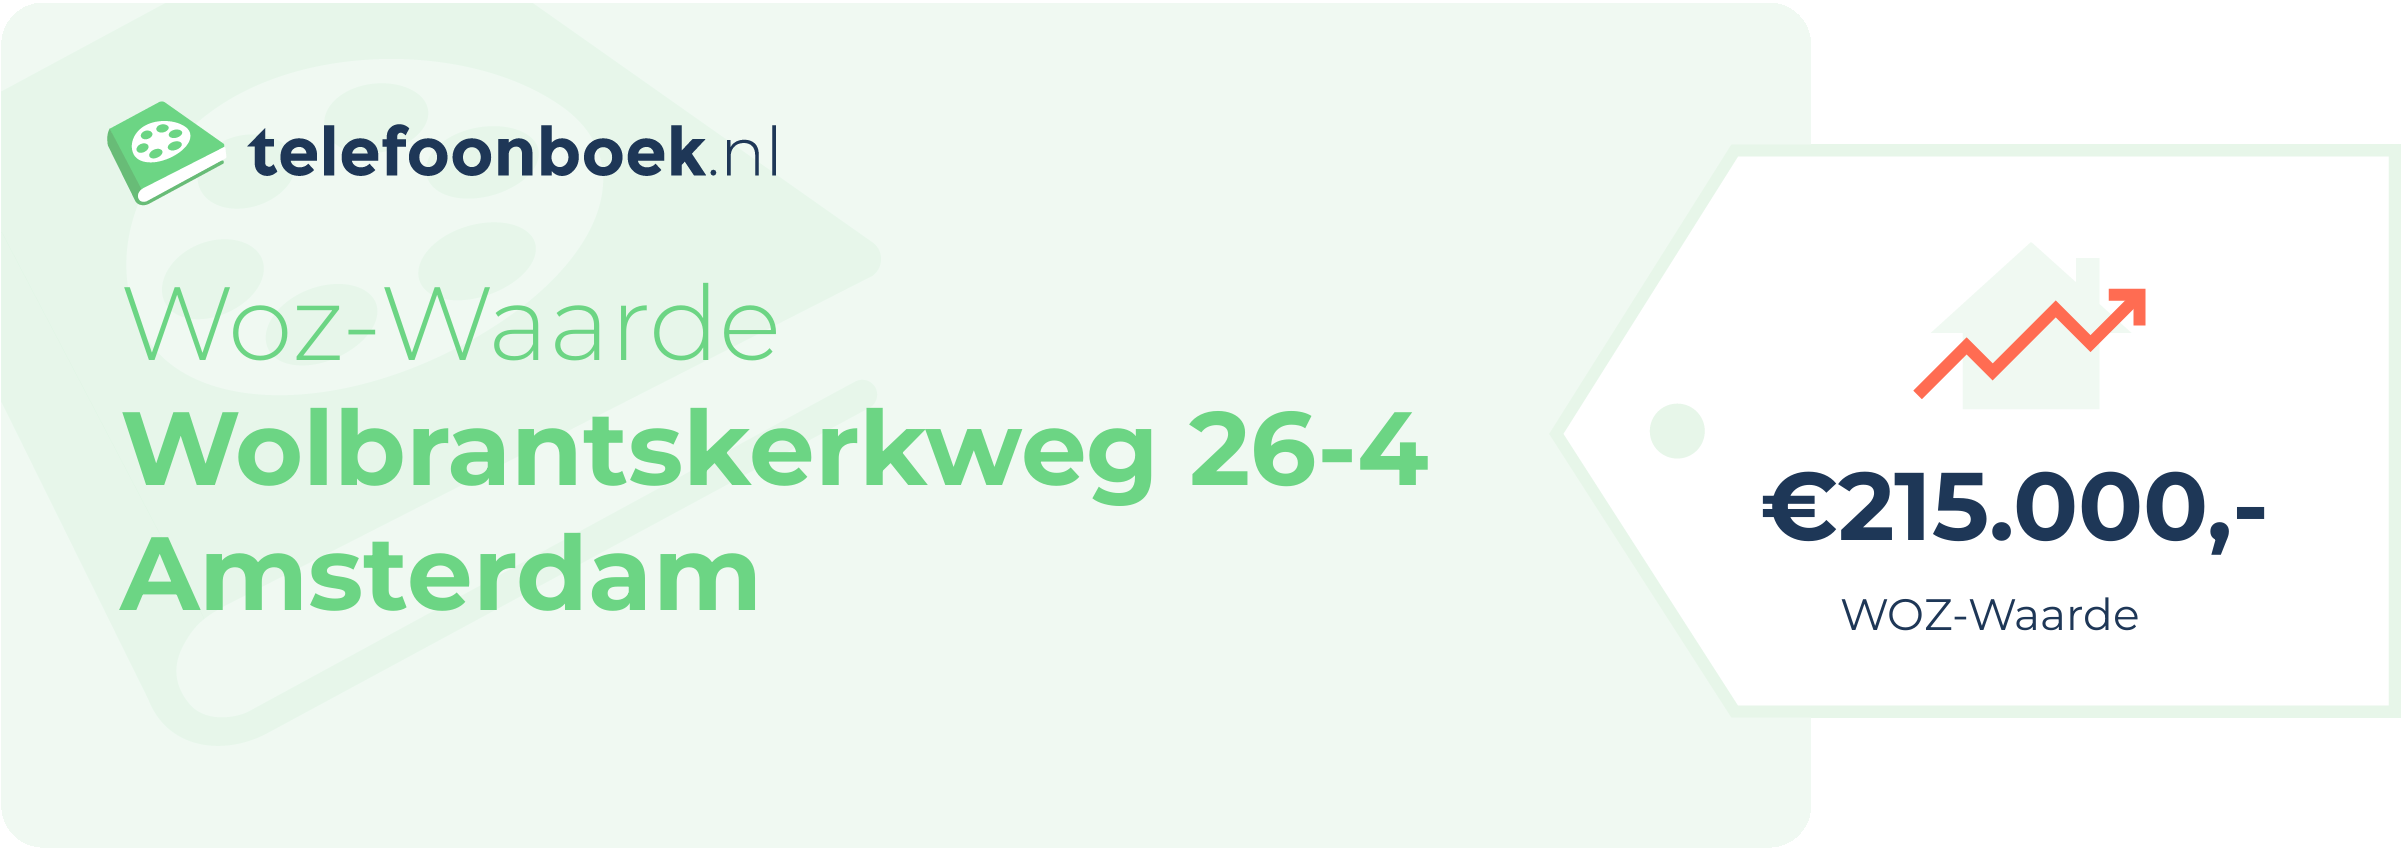 WOZ-waarde Wolbrantskerkweg 26-4 Amsterdam